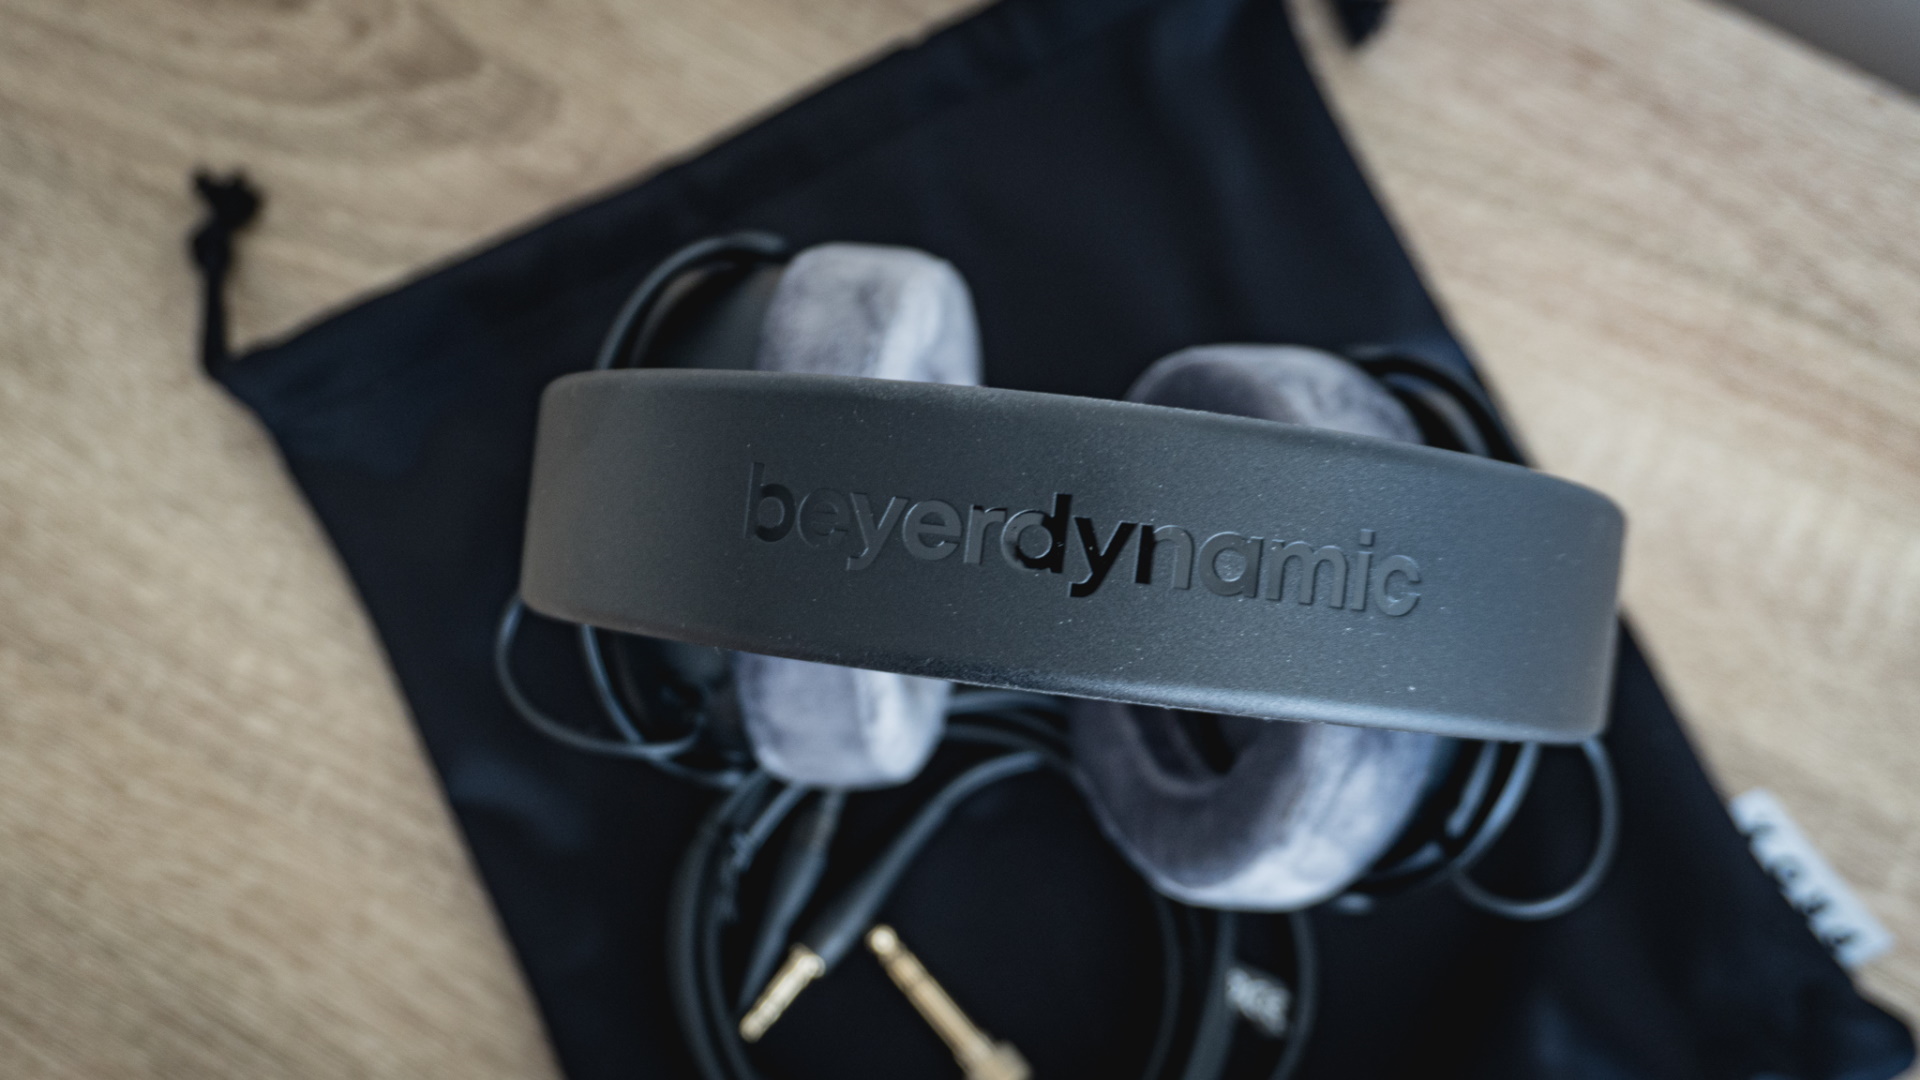 Beyerdynamic DT 900 Pro X headphones